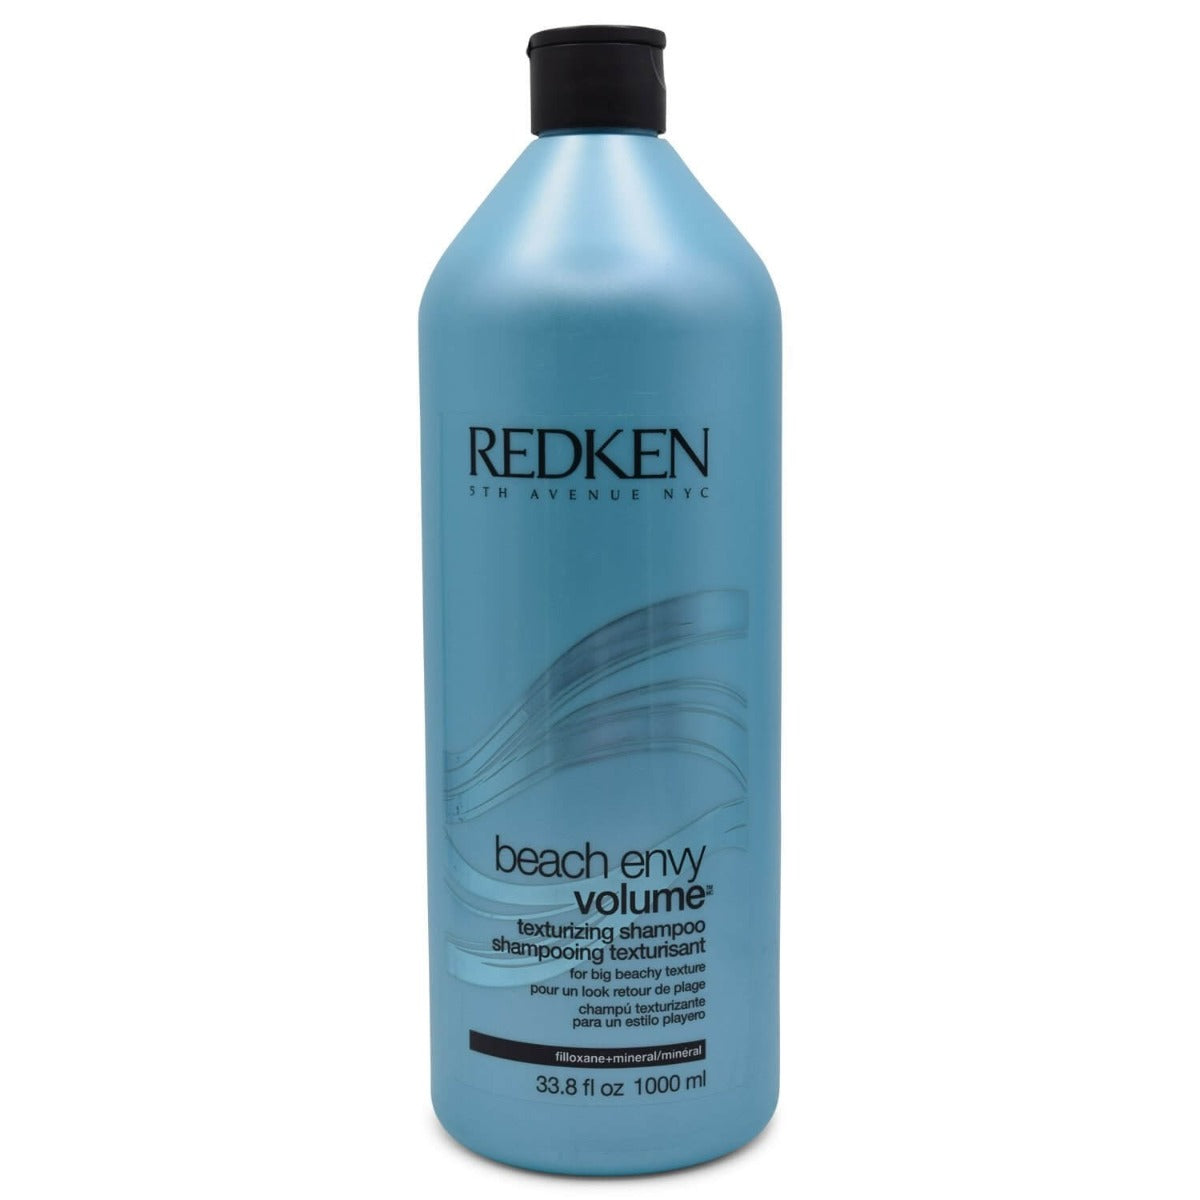 Afhængighed æg tildele Redken Beach Envy Volume Texturizing Shampoo 33.8 oz/1000 ml – Shampoo Zone